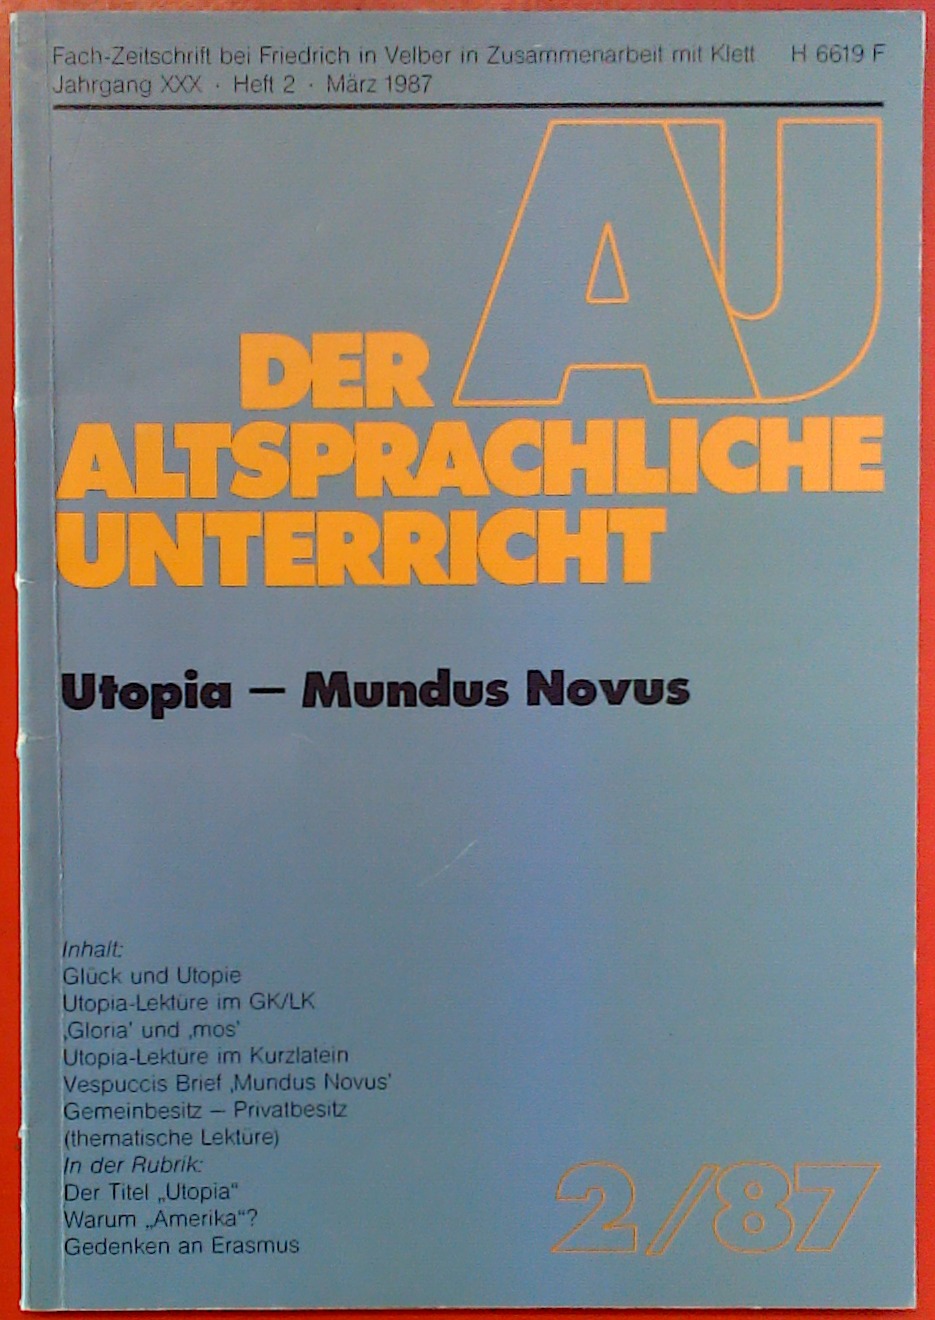 Der altsprachliche Unterricht - Utopia-Mundus Novus (Fachzeitschrift Jahrgang XXX / Heft 2 / März 1987) - Autorenkollektiv